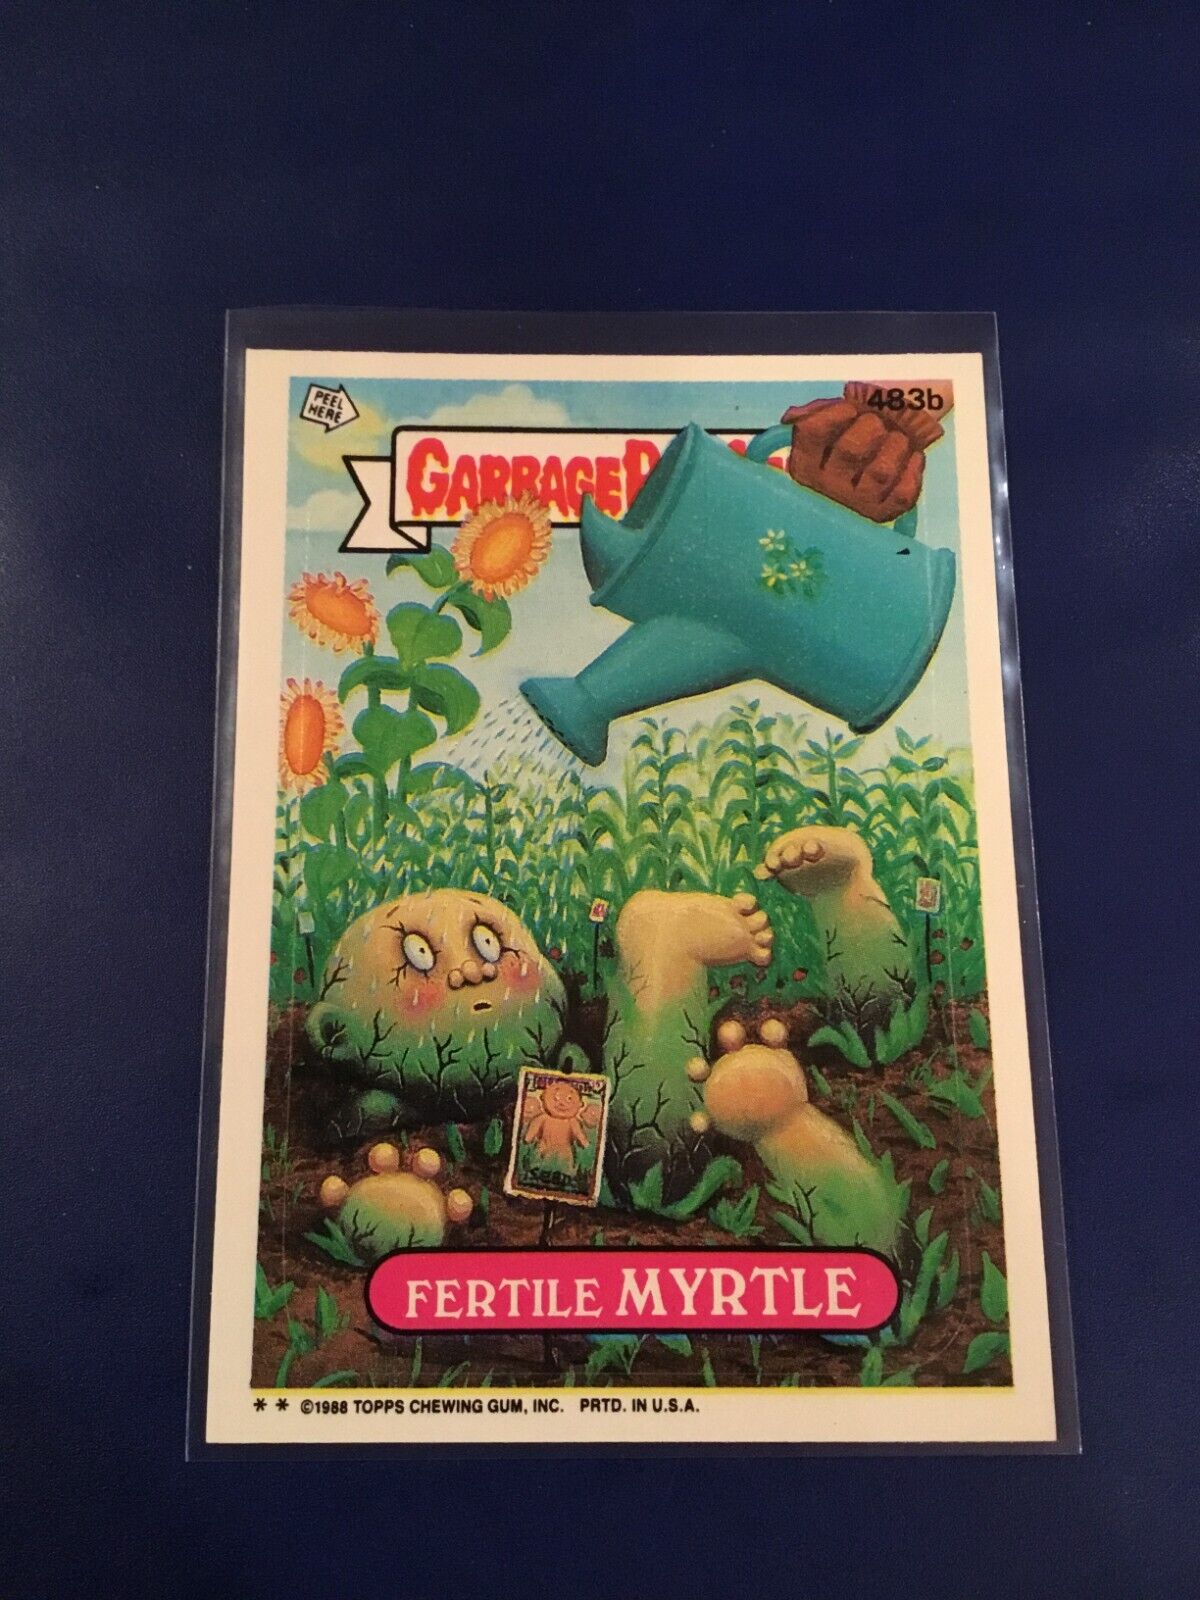 1988 Topps Garbage Pail Kids #483b FERTILE MYRTLE Original Series 12 GPK NM+